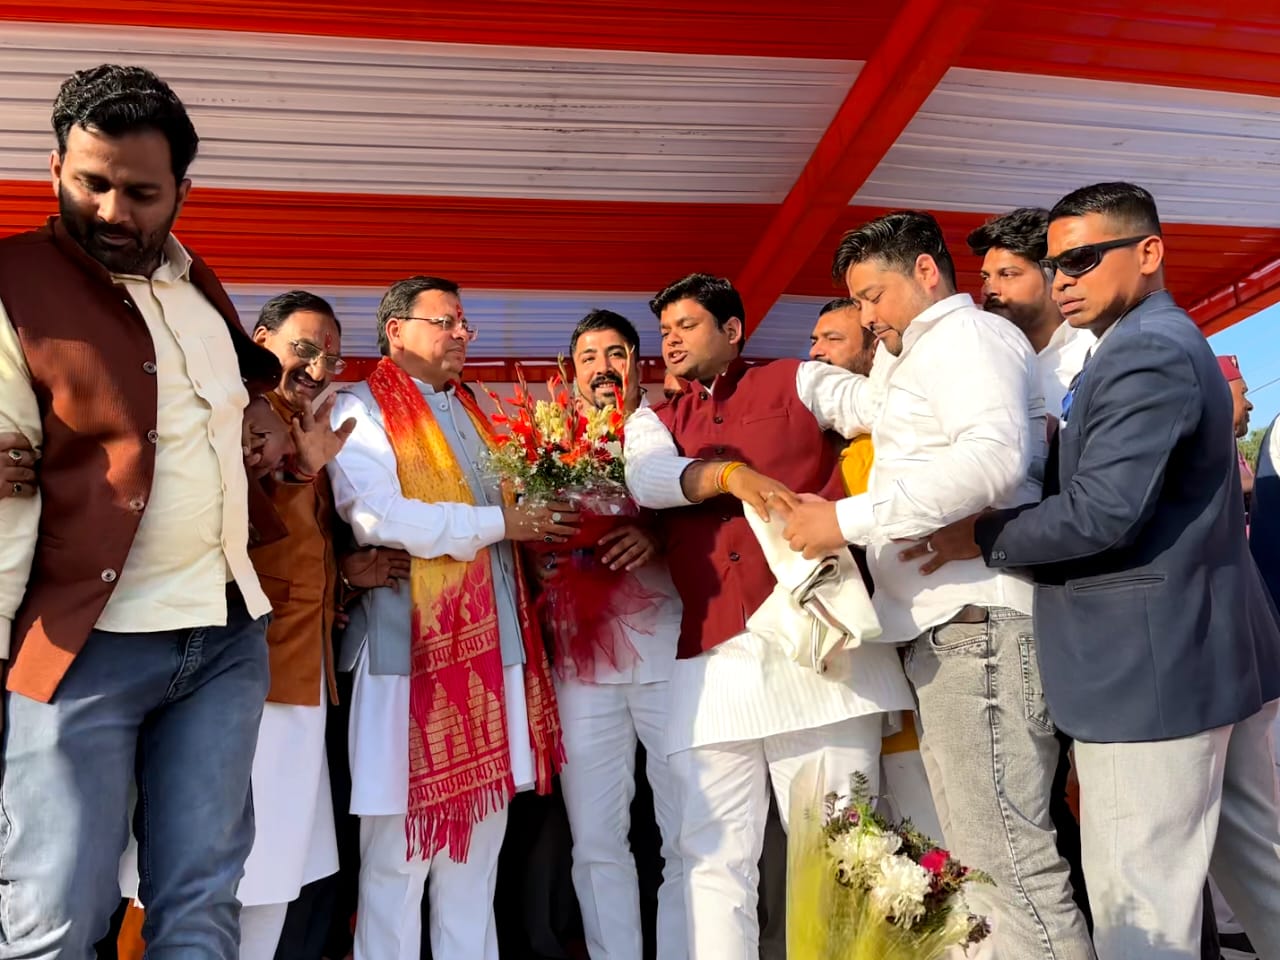 मंगलौर में आयोजित लाभार्थी सम्मेलन में युवा कांग्रेस नेता विनय शर्मा एवं सौरभ पंवार ने थामा भाजपा का दमन- मुख्यमंत्री और प्रदेश अध्यक्ष ने सभी को पटका पहनाकर पार्टी में किया शामिल